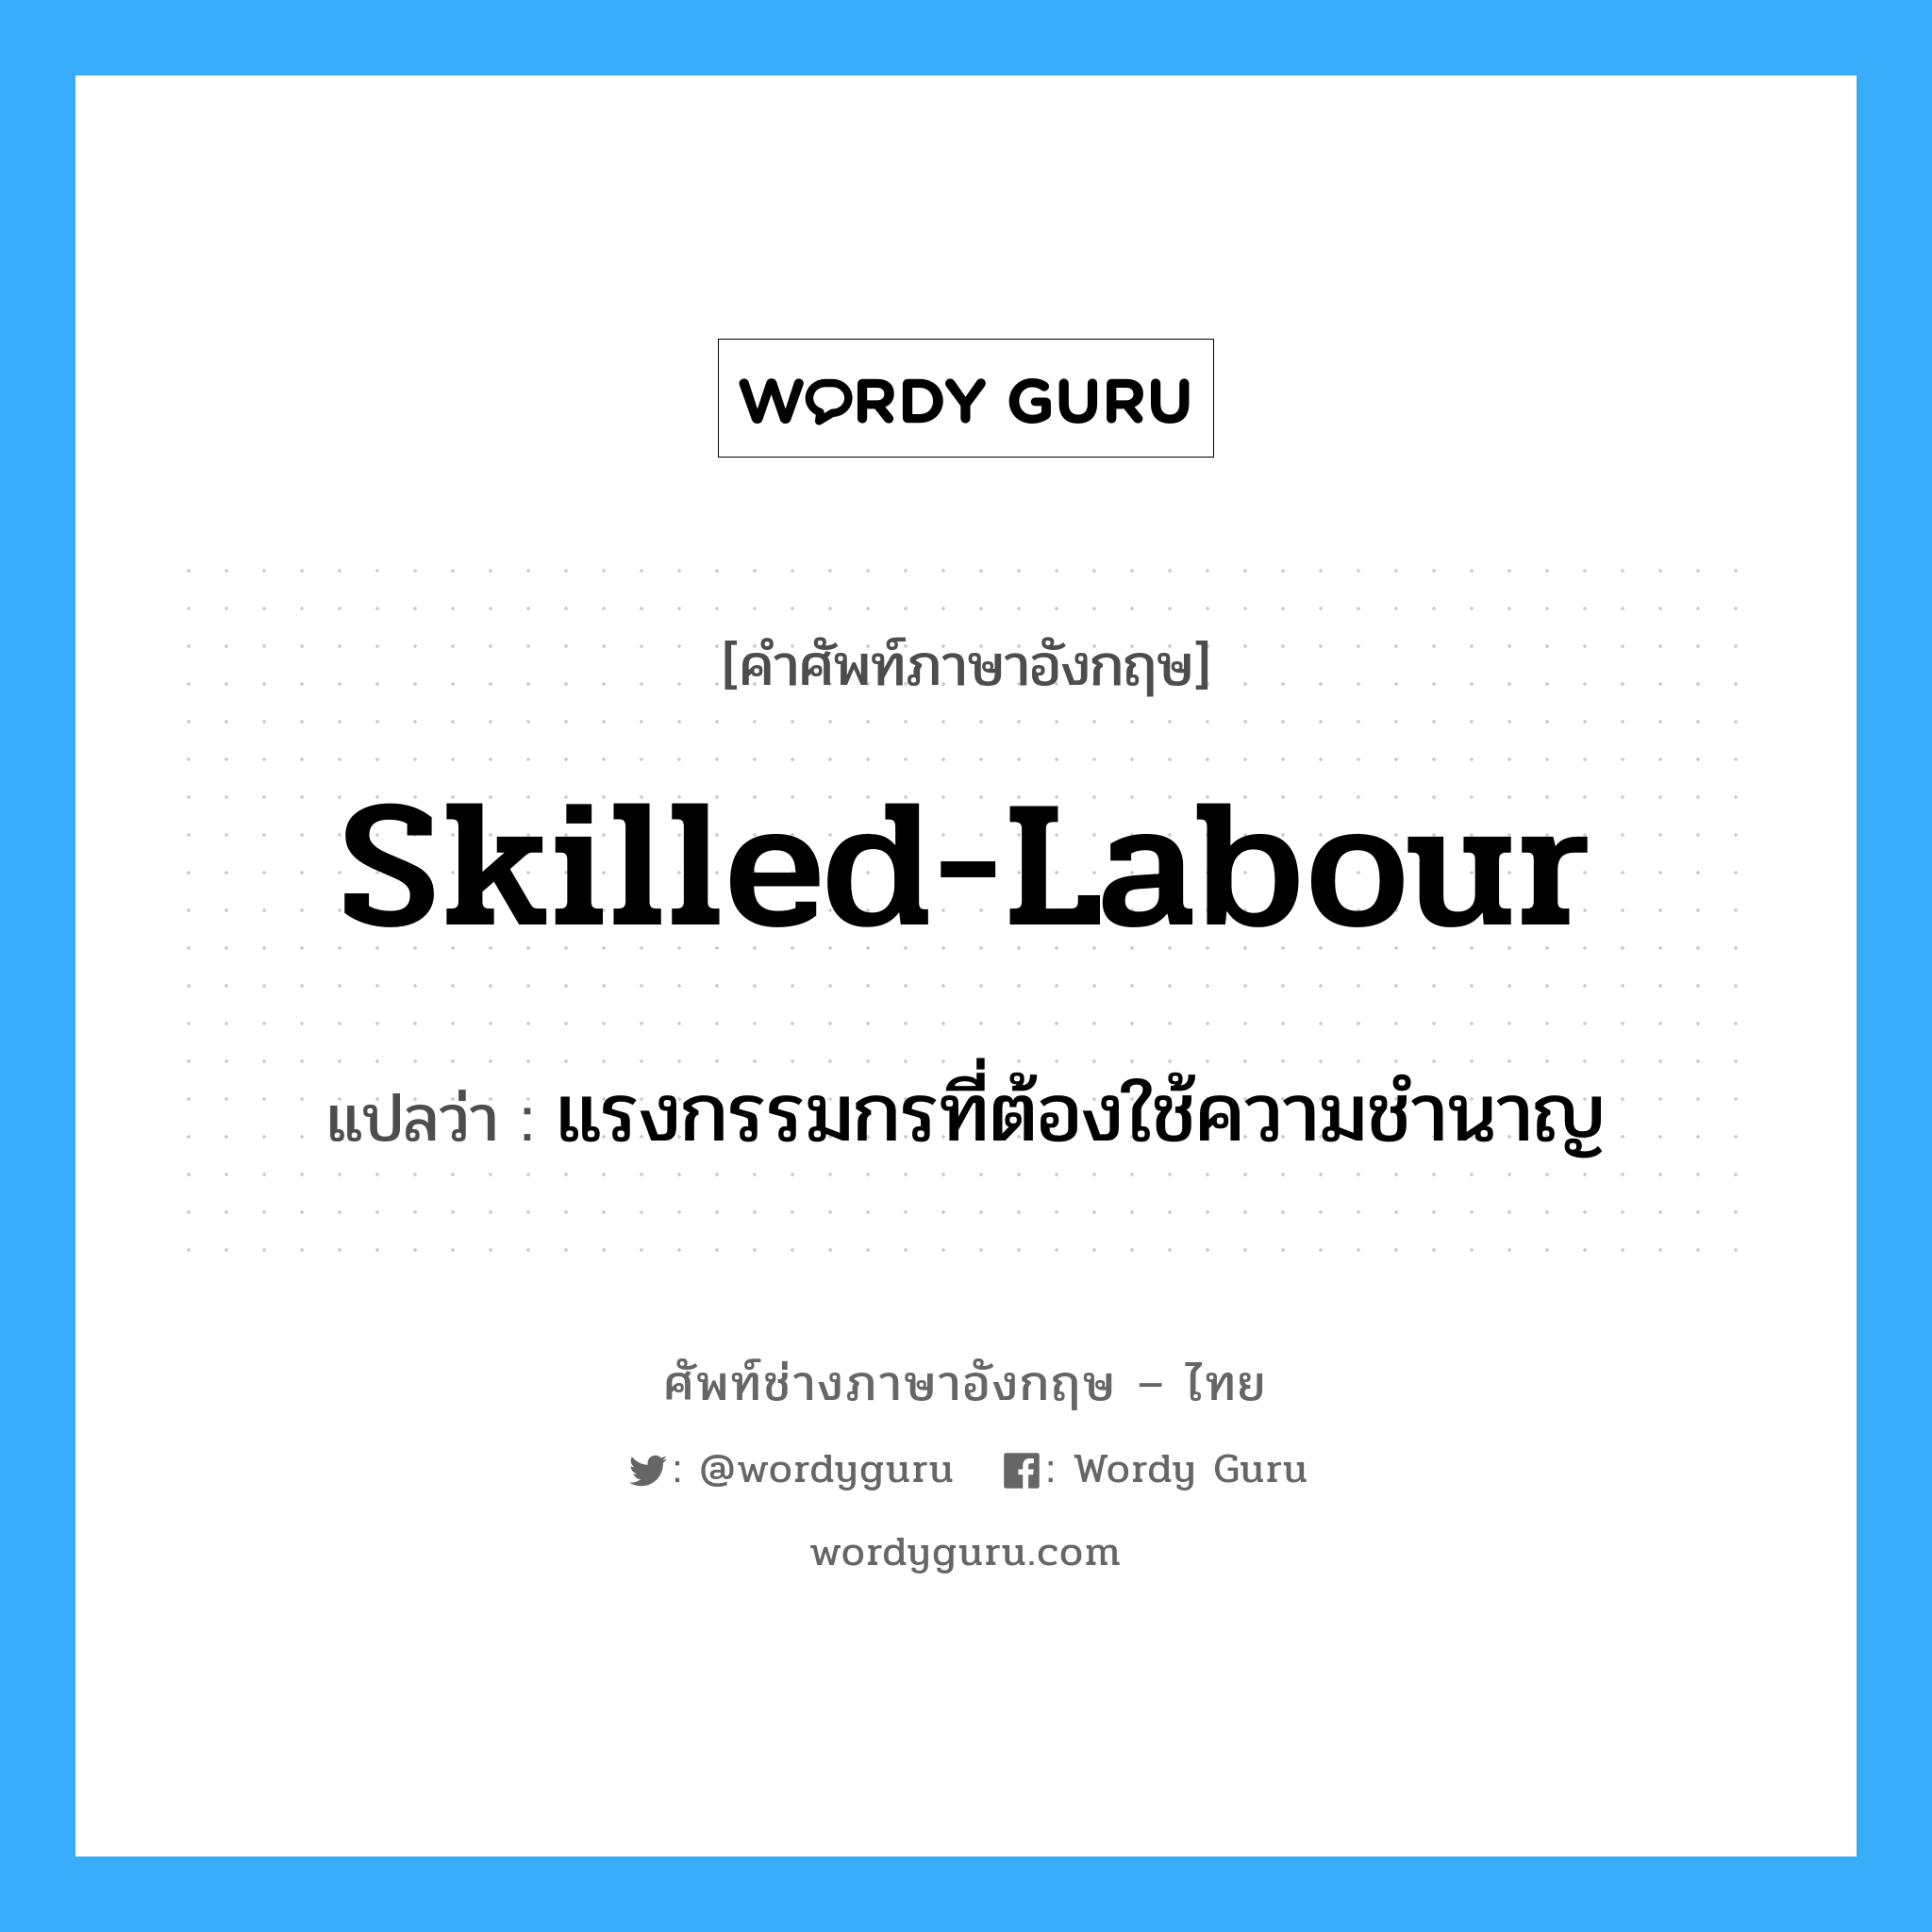 skilled-labour แปลว่า?, คำศัพท์ช่างภาษาอังกฤษ - ไทย skilled-labour คำศัพท์ภาษาอังกฤษ skilled-labour แปลว่า แรงกรรมกรที่ต้องใช้ความชำนาญ